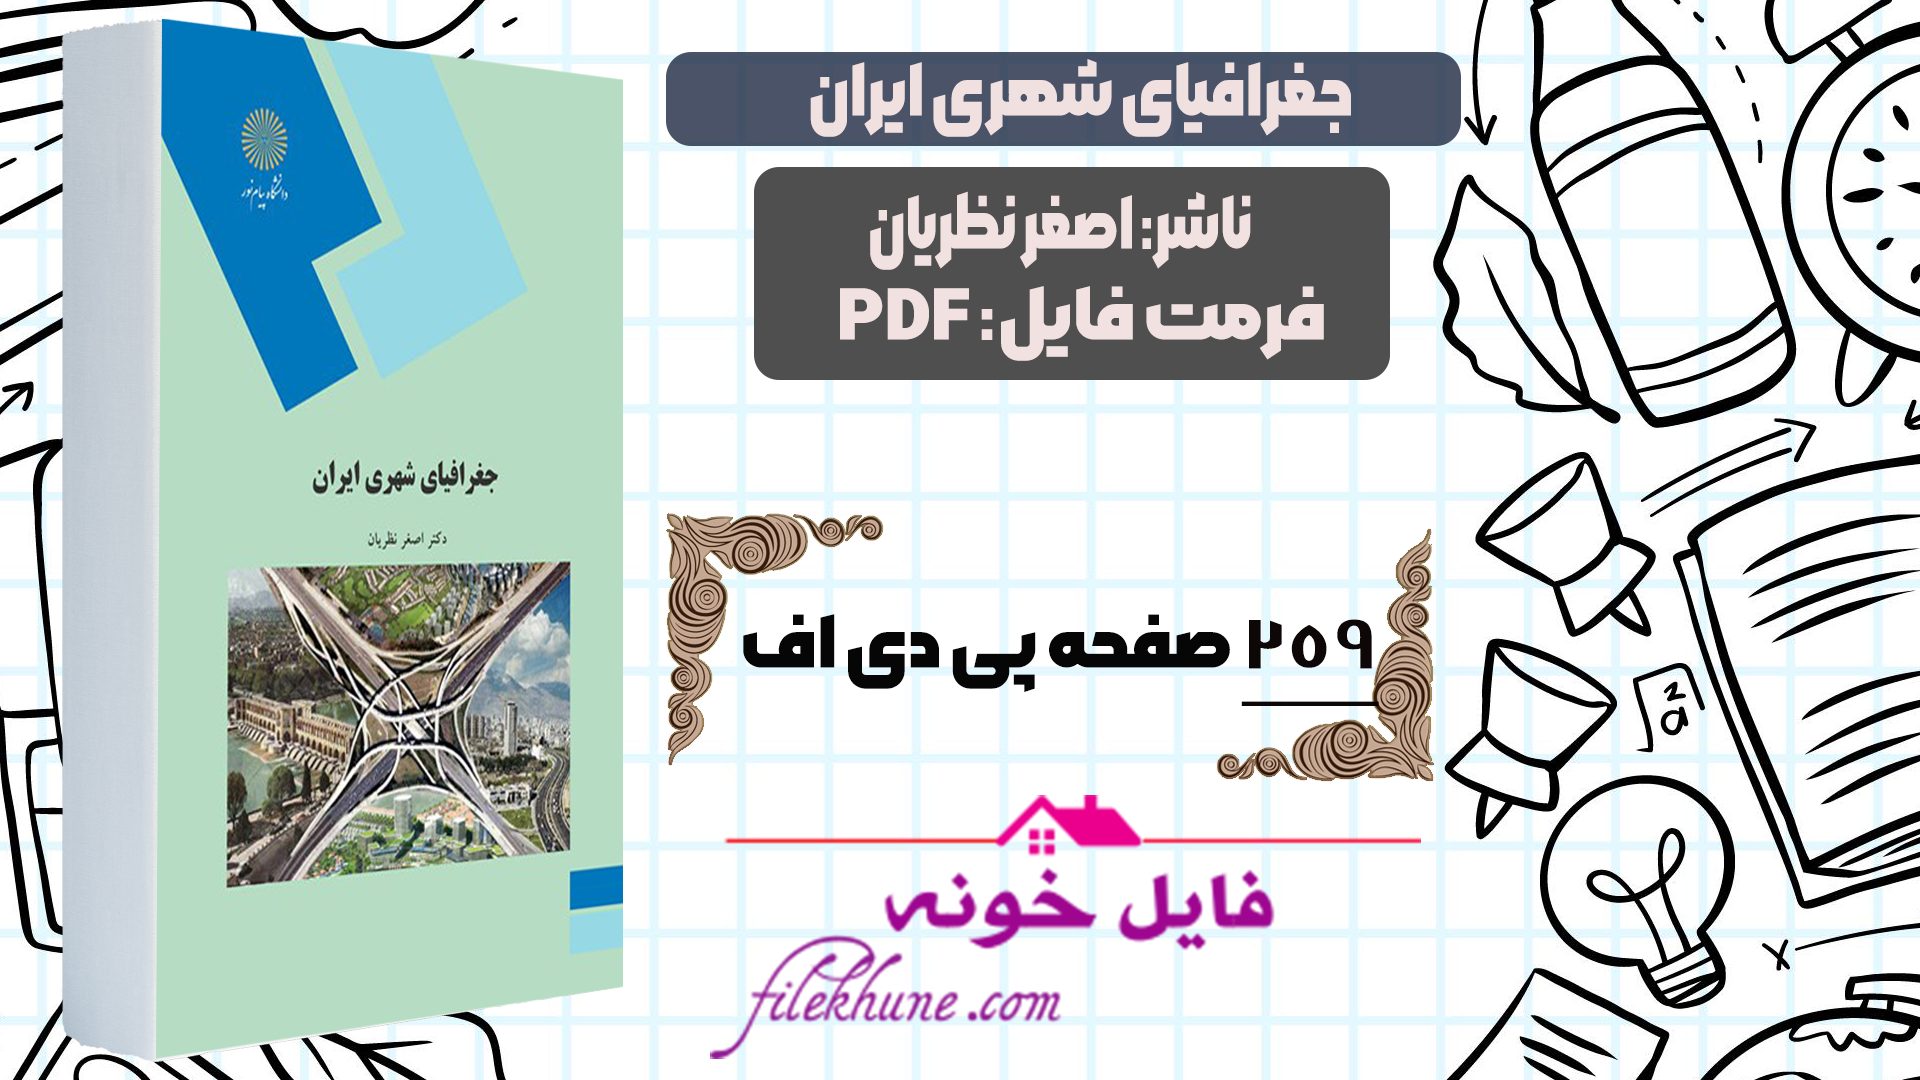 دانلود کتاب جغرافیای شهری ایران اصغر نظریان PDF